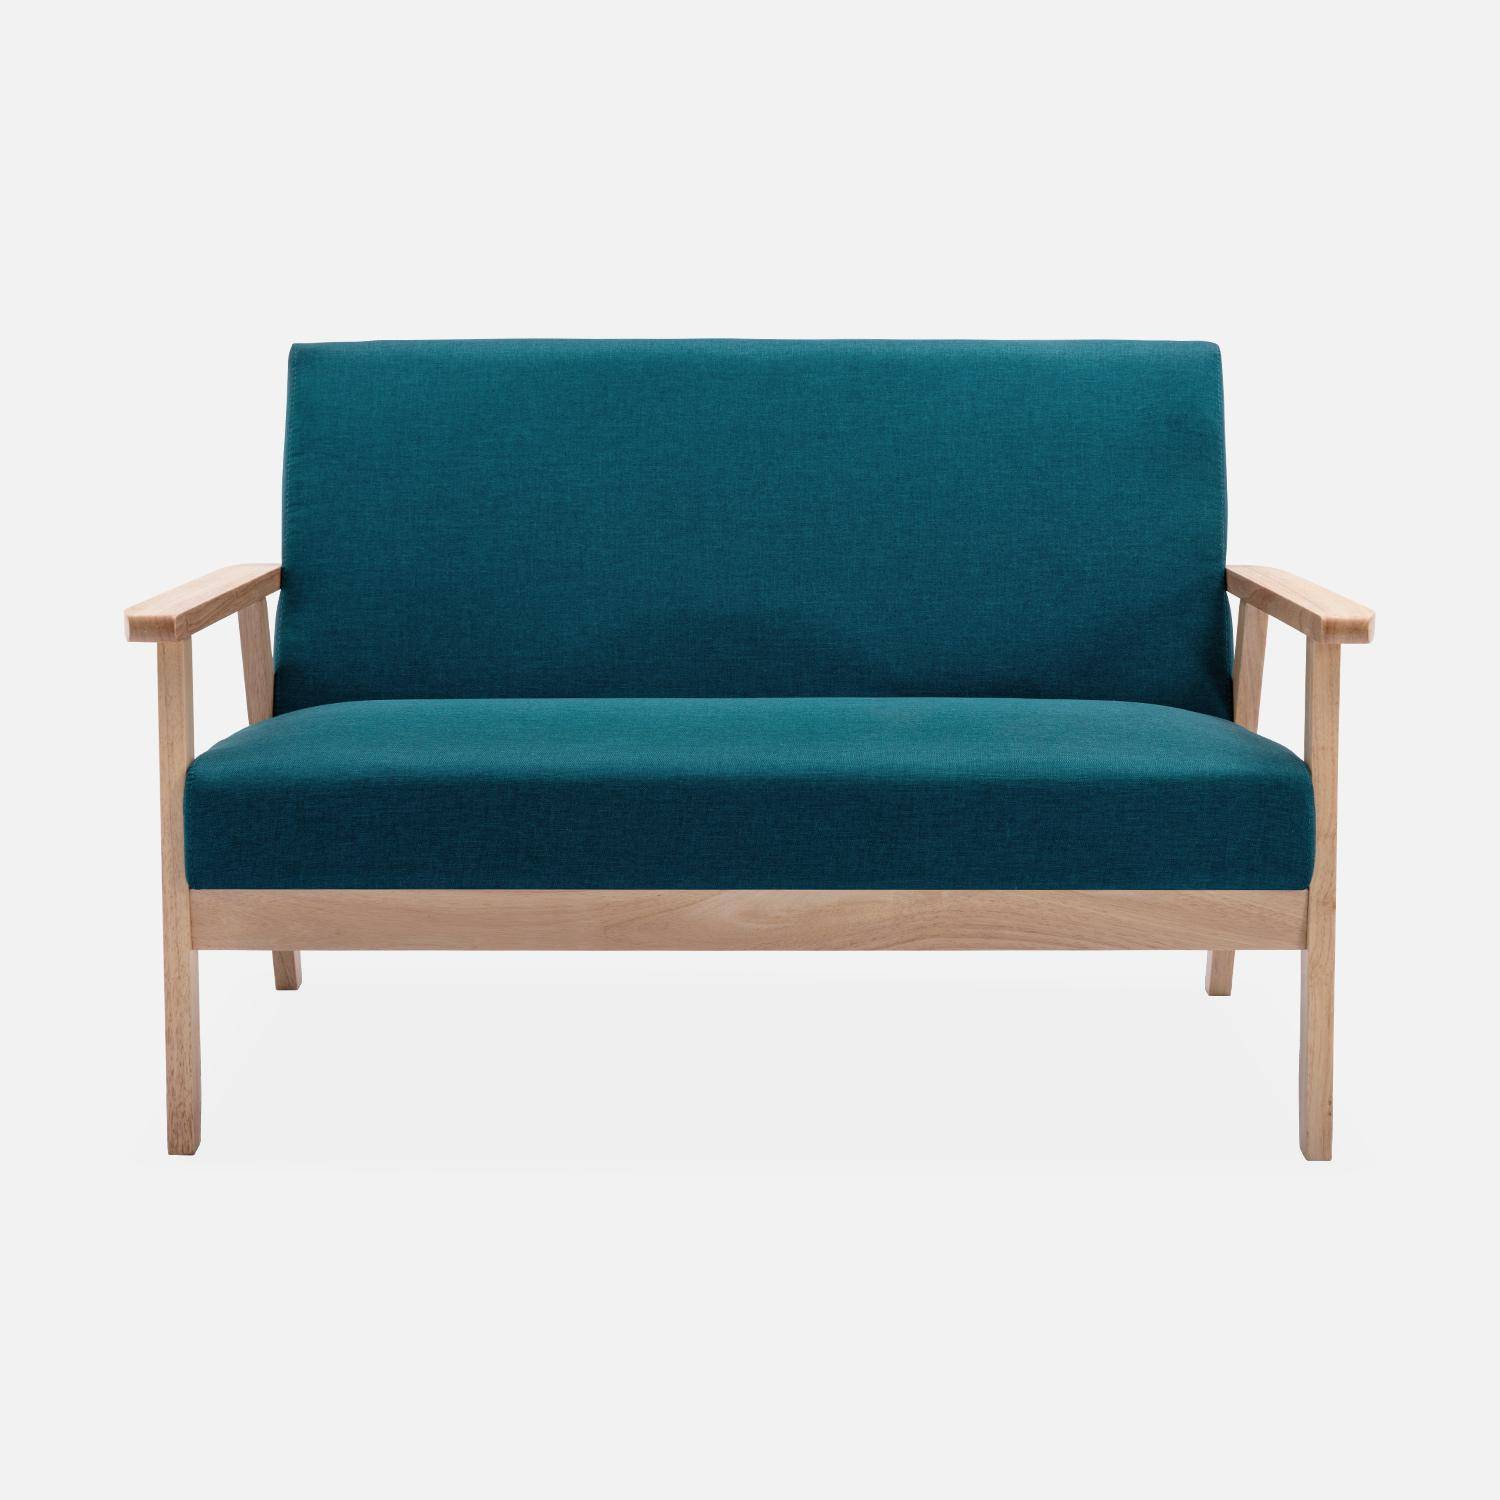 Banco y sillón escandinavos de madera y tela azul petróleo L 114 x A 69,5 x Alt 73cm,sweeek,Photo3